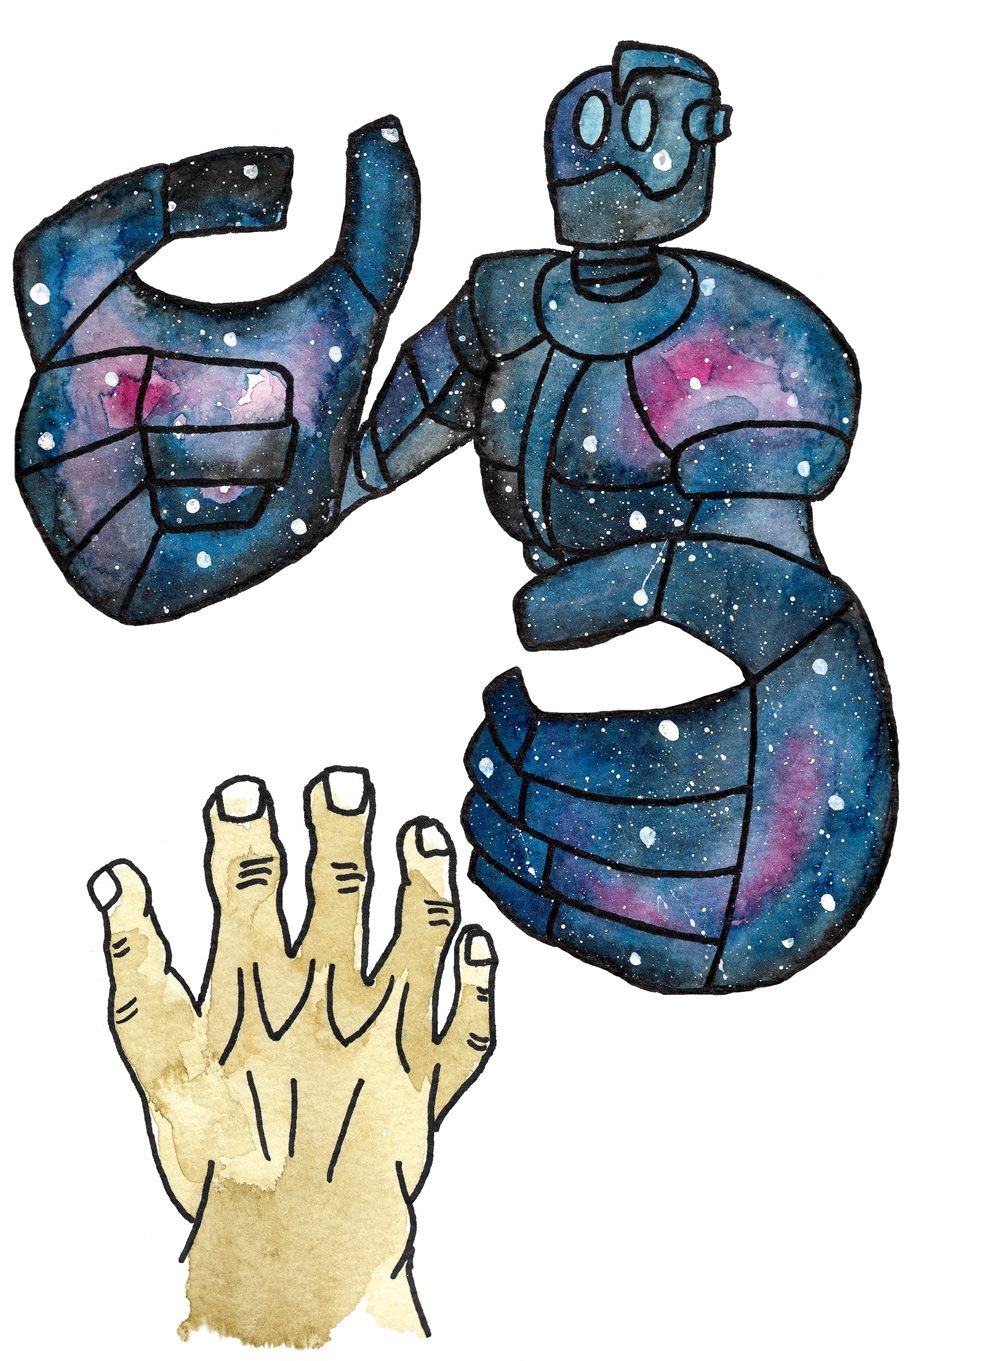 Aquarellbild eines Roboters in den Farben Blau und Violett, der seine Arme einer menschlichen Hand entgegenstreckt